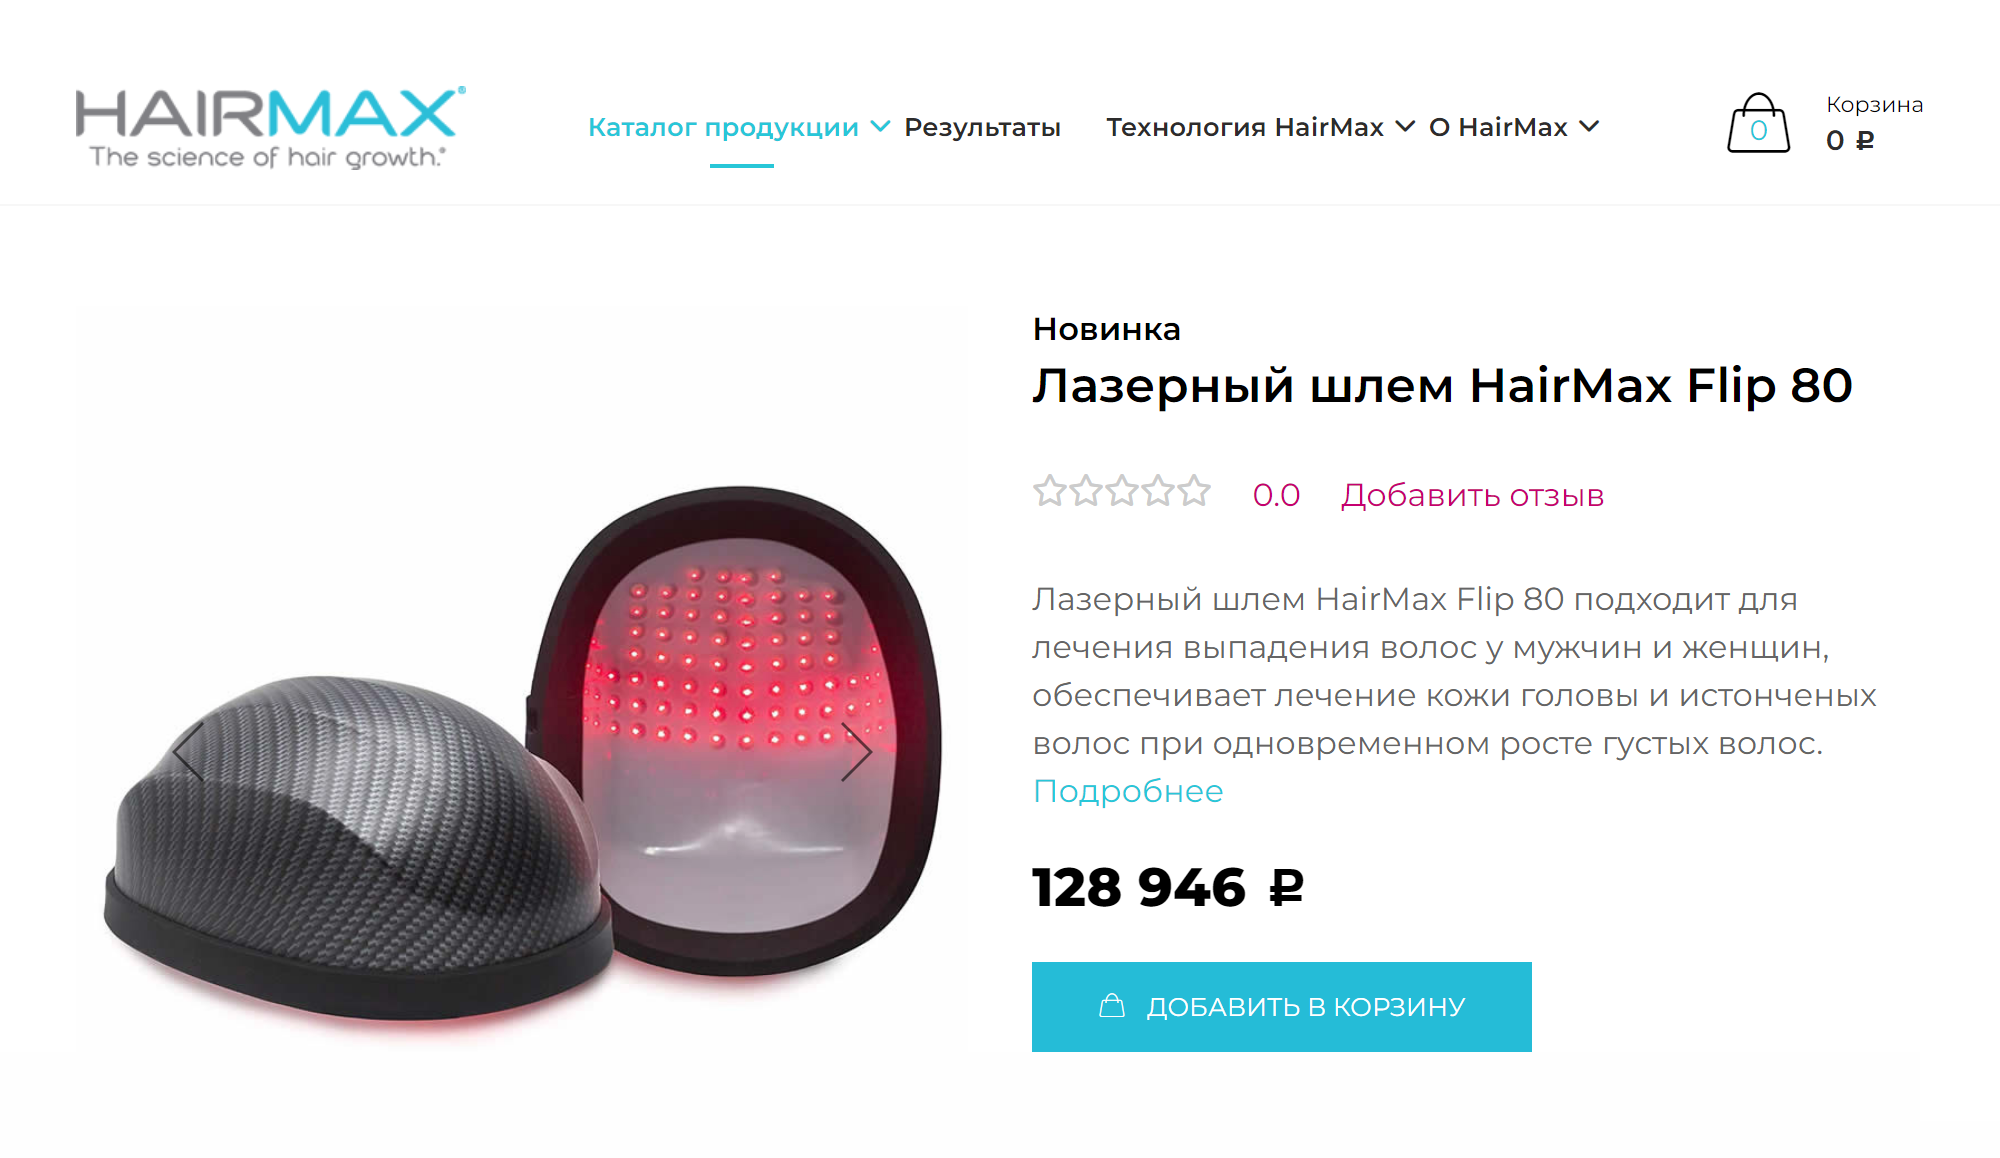 Лазерный шлем для лечения алопеции HairMax. Источник: hairmax.shop